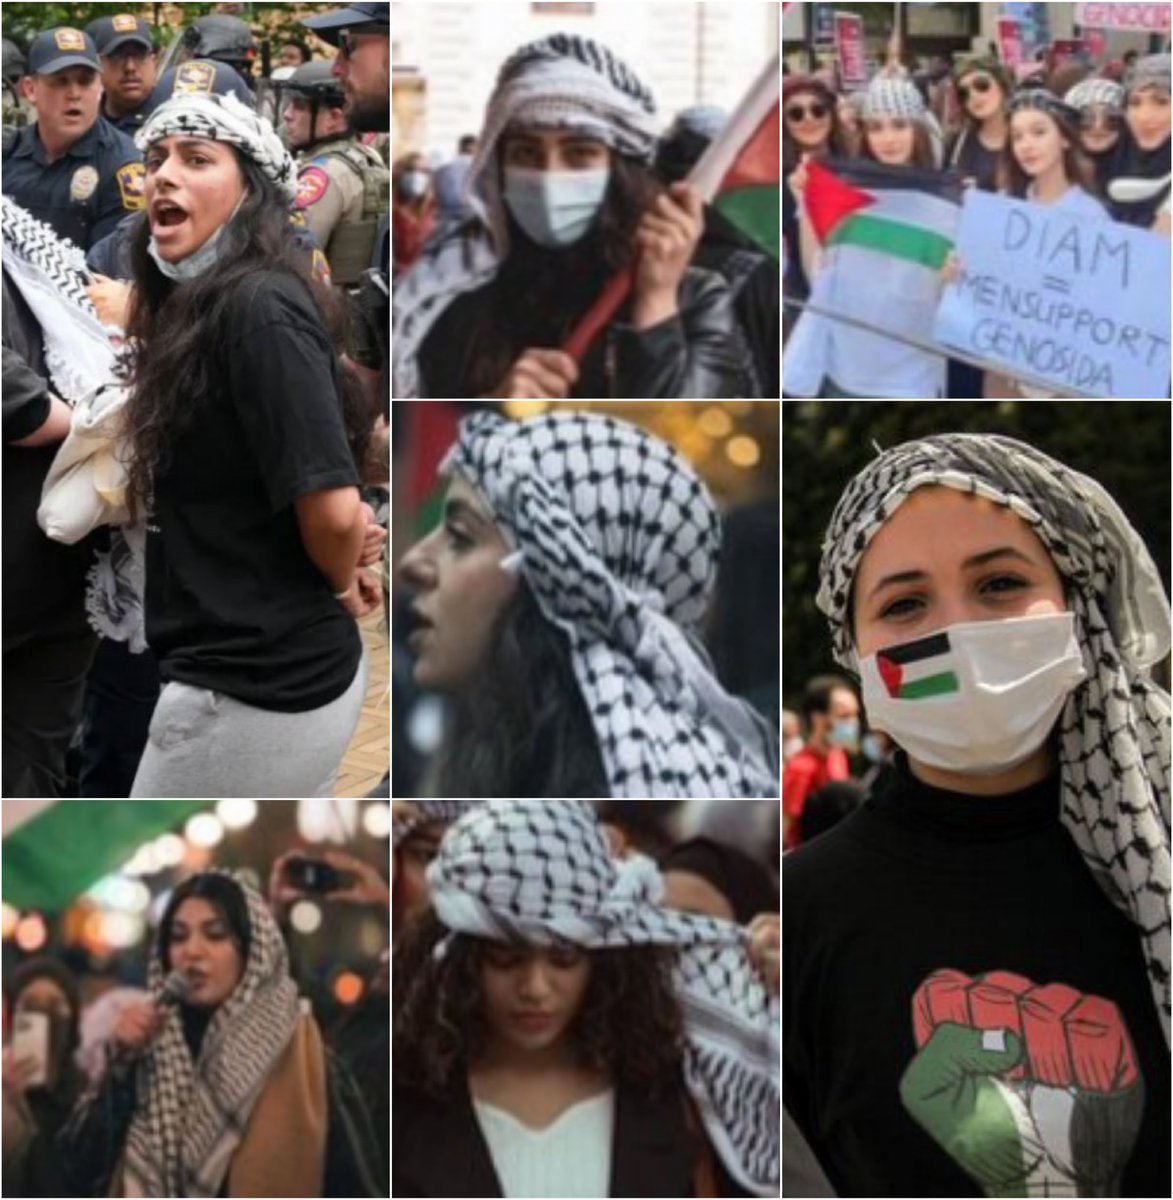 آخرالزمان جایی که زنان غربی در حمایت از ...
زنان غزه ؛ چفیه بر سر میبندن و کتک میخورن